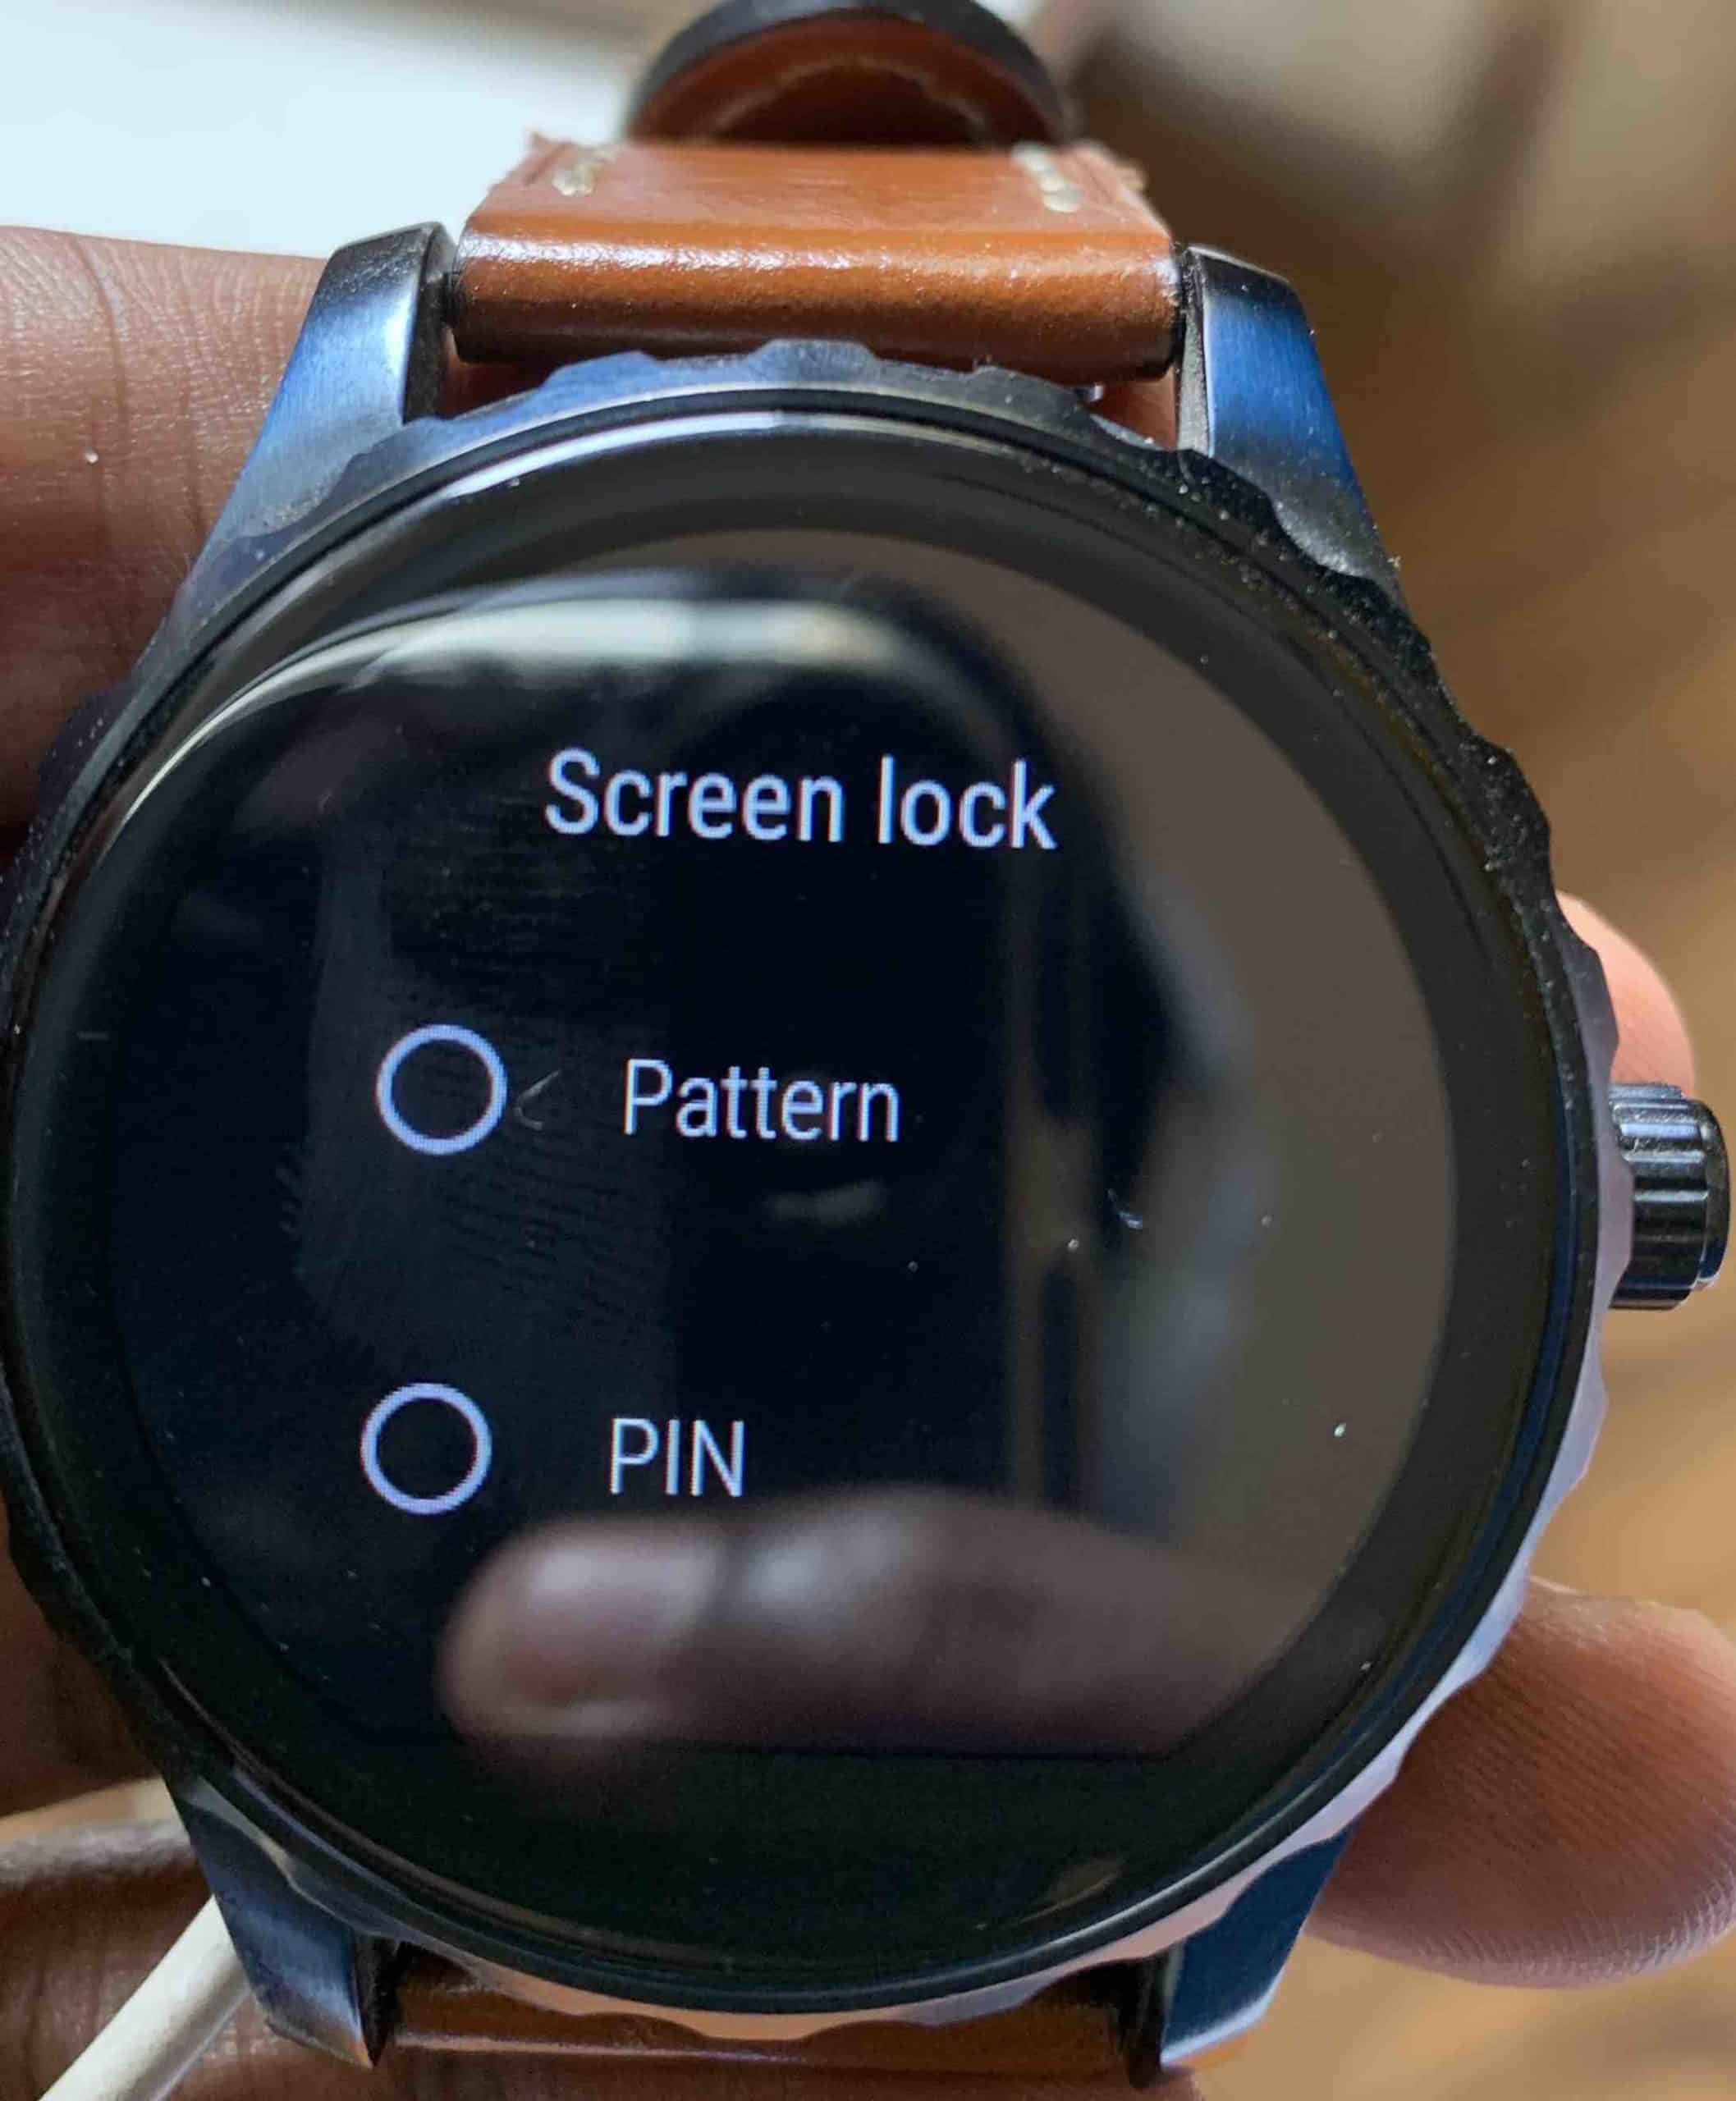 በእርስዎ Wear OS smartwatch ላይ የማያ ገጽ ቁልፍን እንዴት ማንቃት እንደሚቻል